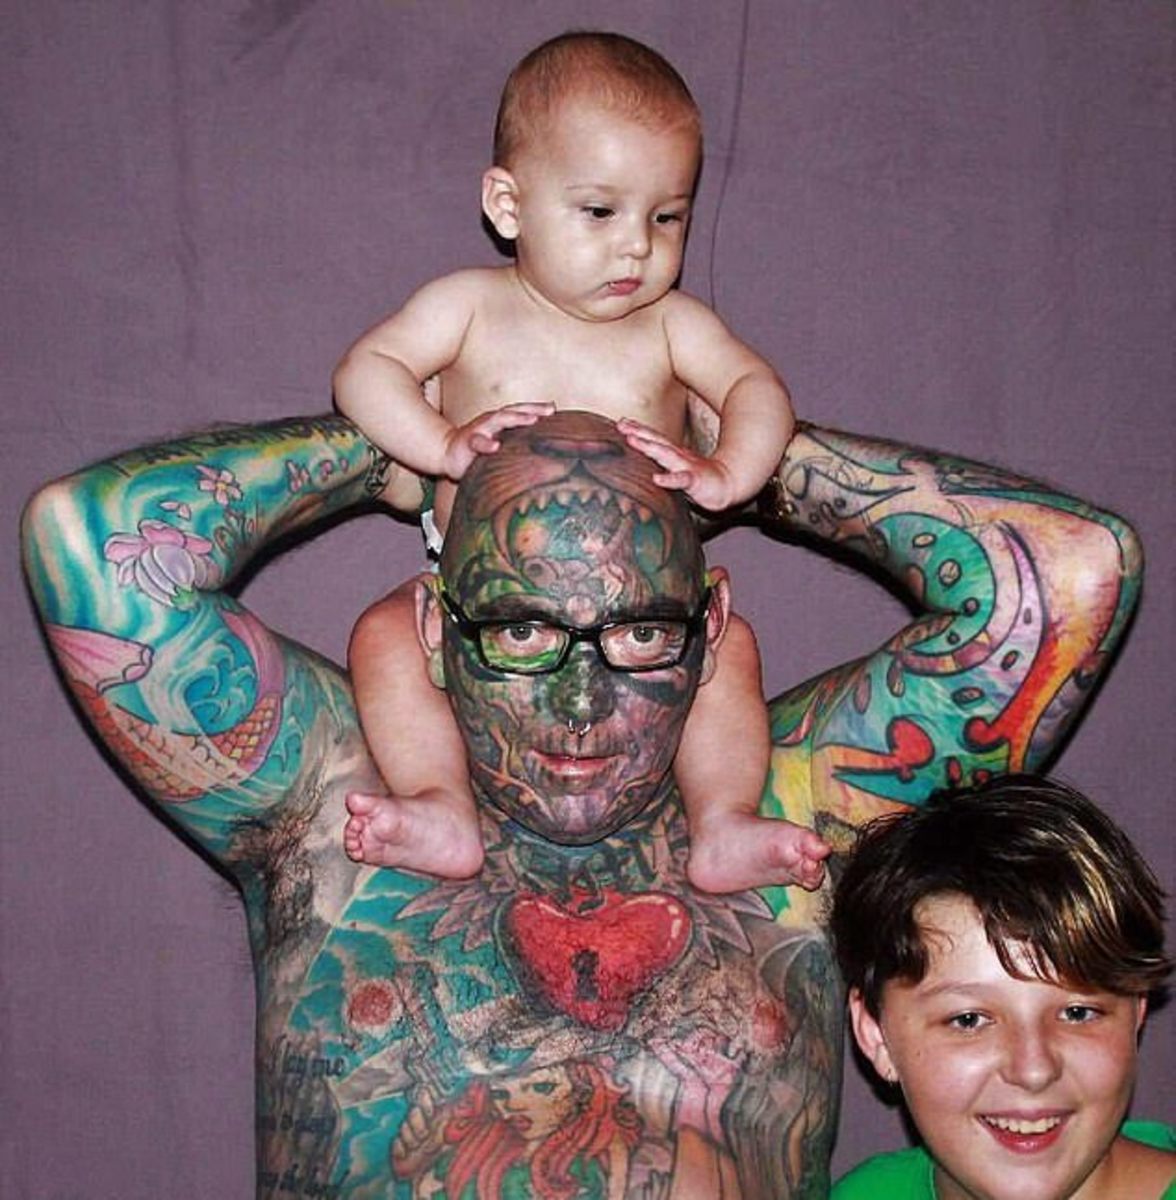 Father-Of-Two bruger $ 90.000 på at dække hele sin krop med tatoveringer, Brett Cross, dækker 99 procent af sin krop i tatoveringer, George Siatos, palmetatoveringer, navnetatoveringer, tatoveringer, tatoveringer i Australien, daglig mail Australien, BLEVET